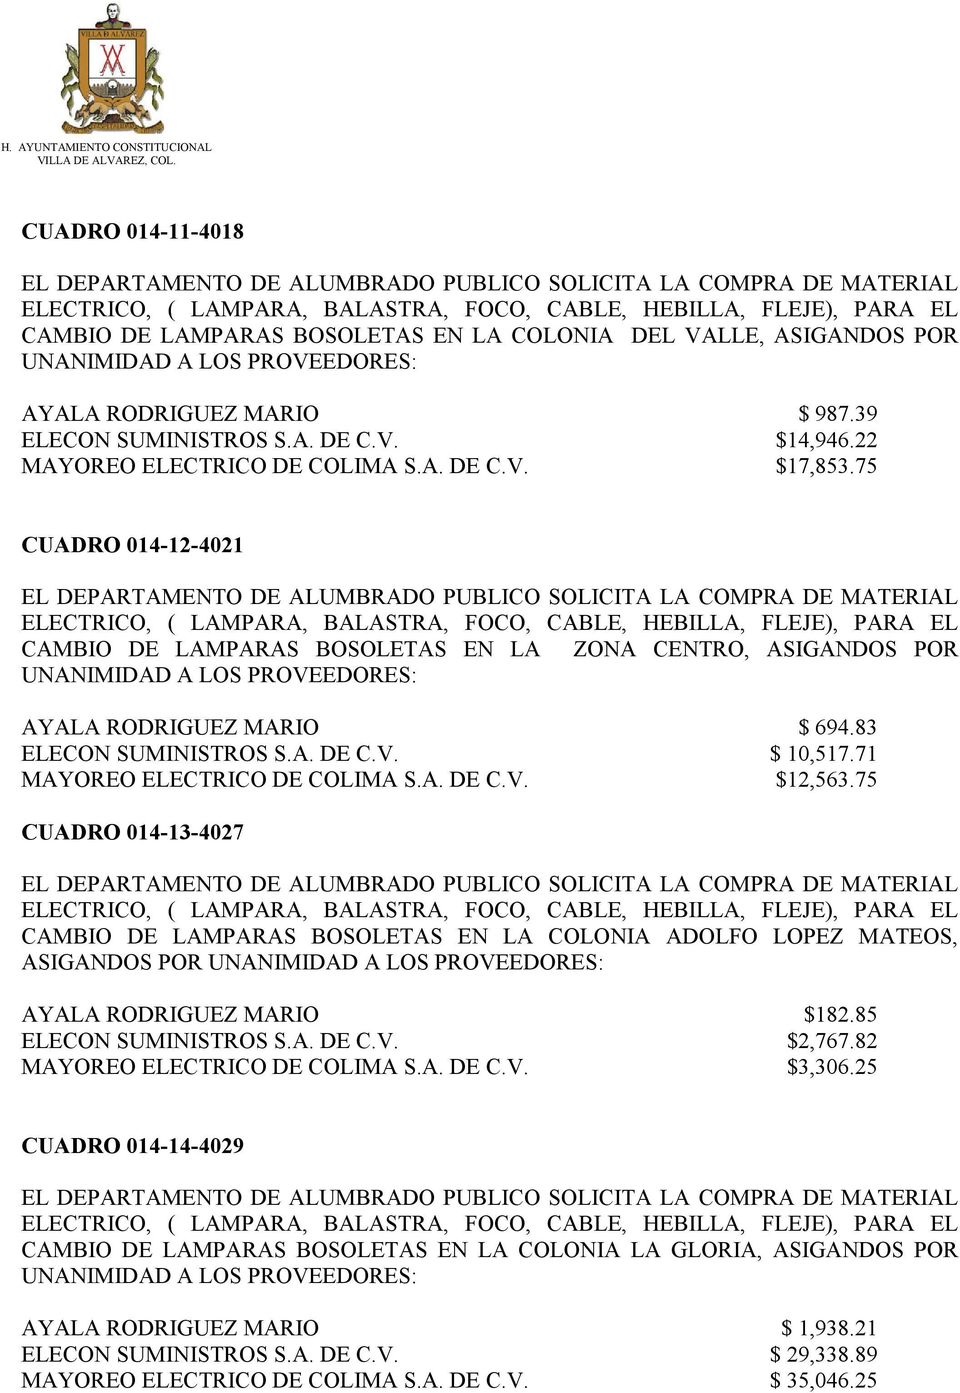 75 CUADRO 014-13-4027 CAMBIO DE LAMPARAS BOSOLETAS EN LA COLONIA ADOLFO LOPEZ MATEOS, ASIGANDOS POR AYALA RODRIGUEZ MARIO $182.85 ELECON SUMINISTROS S.A. DE C.V. $2,767.